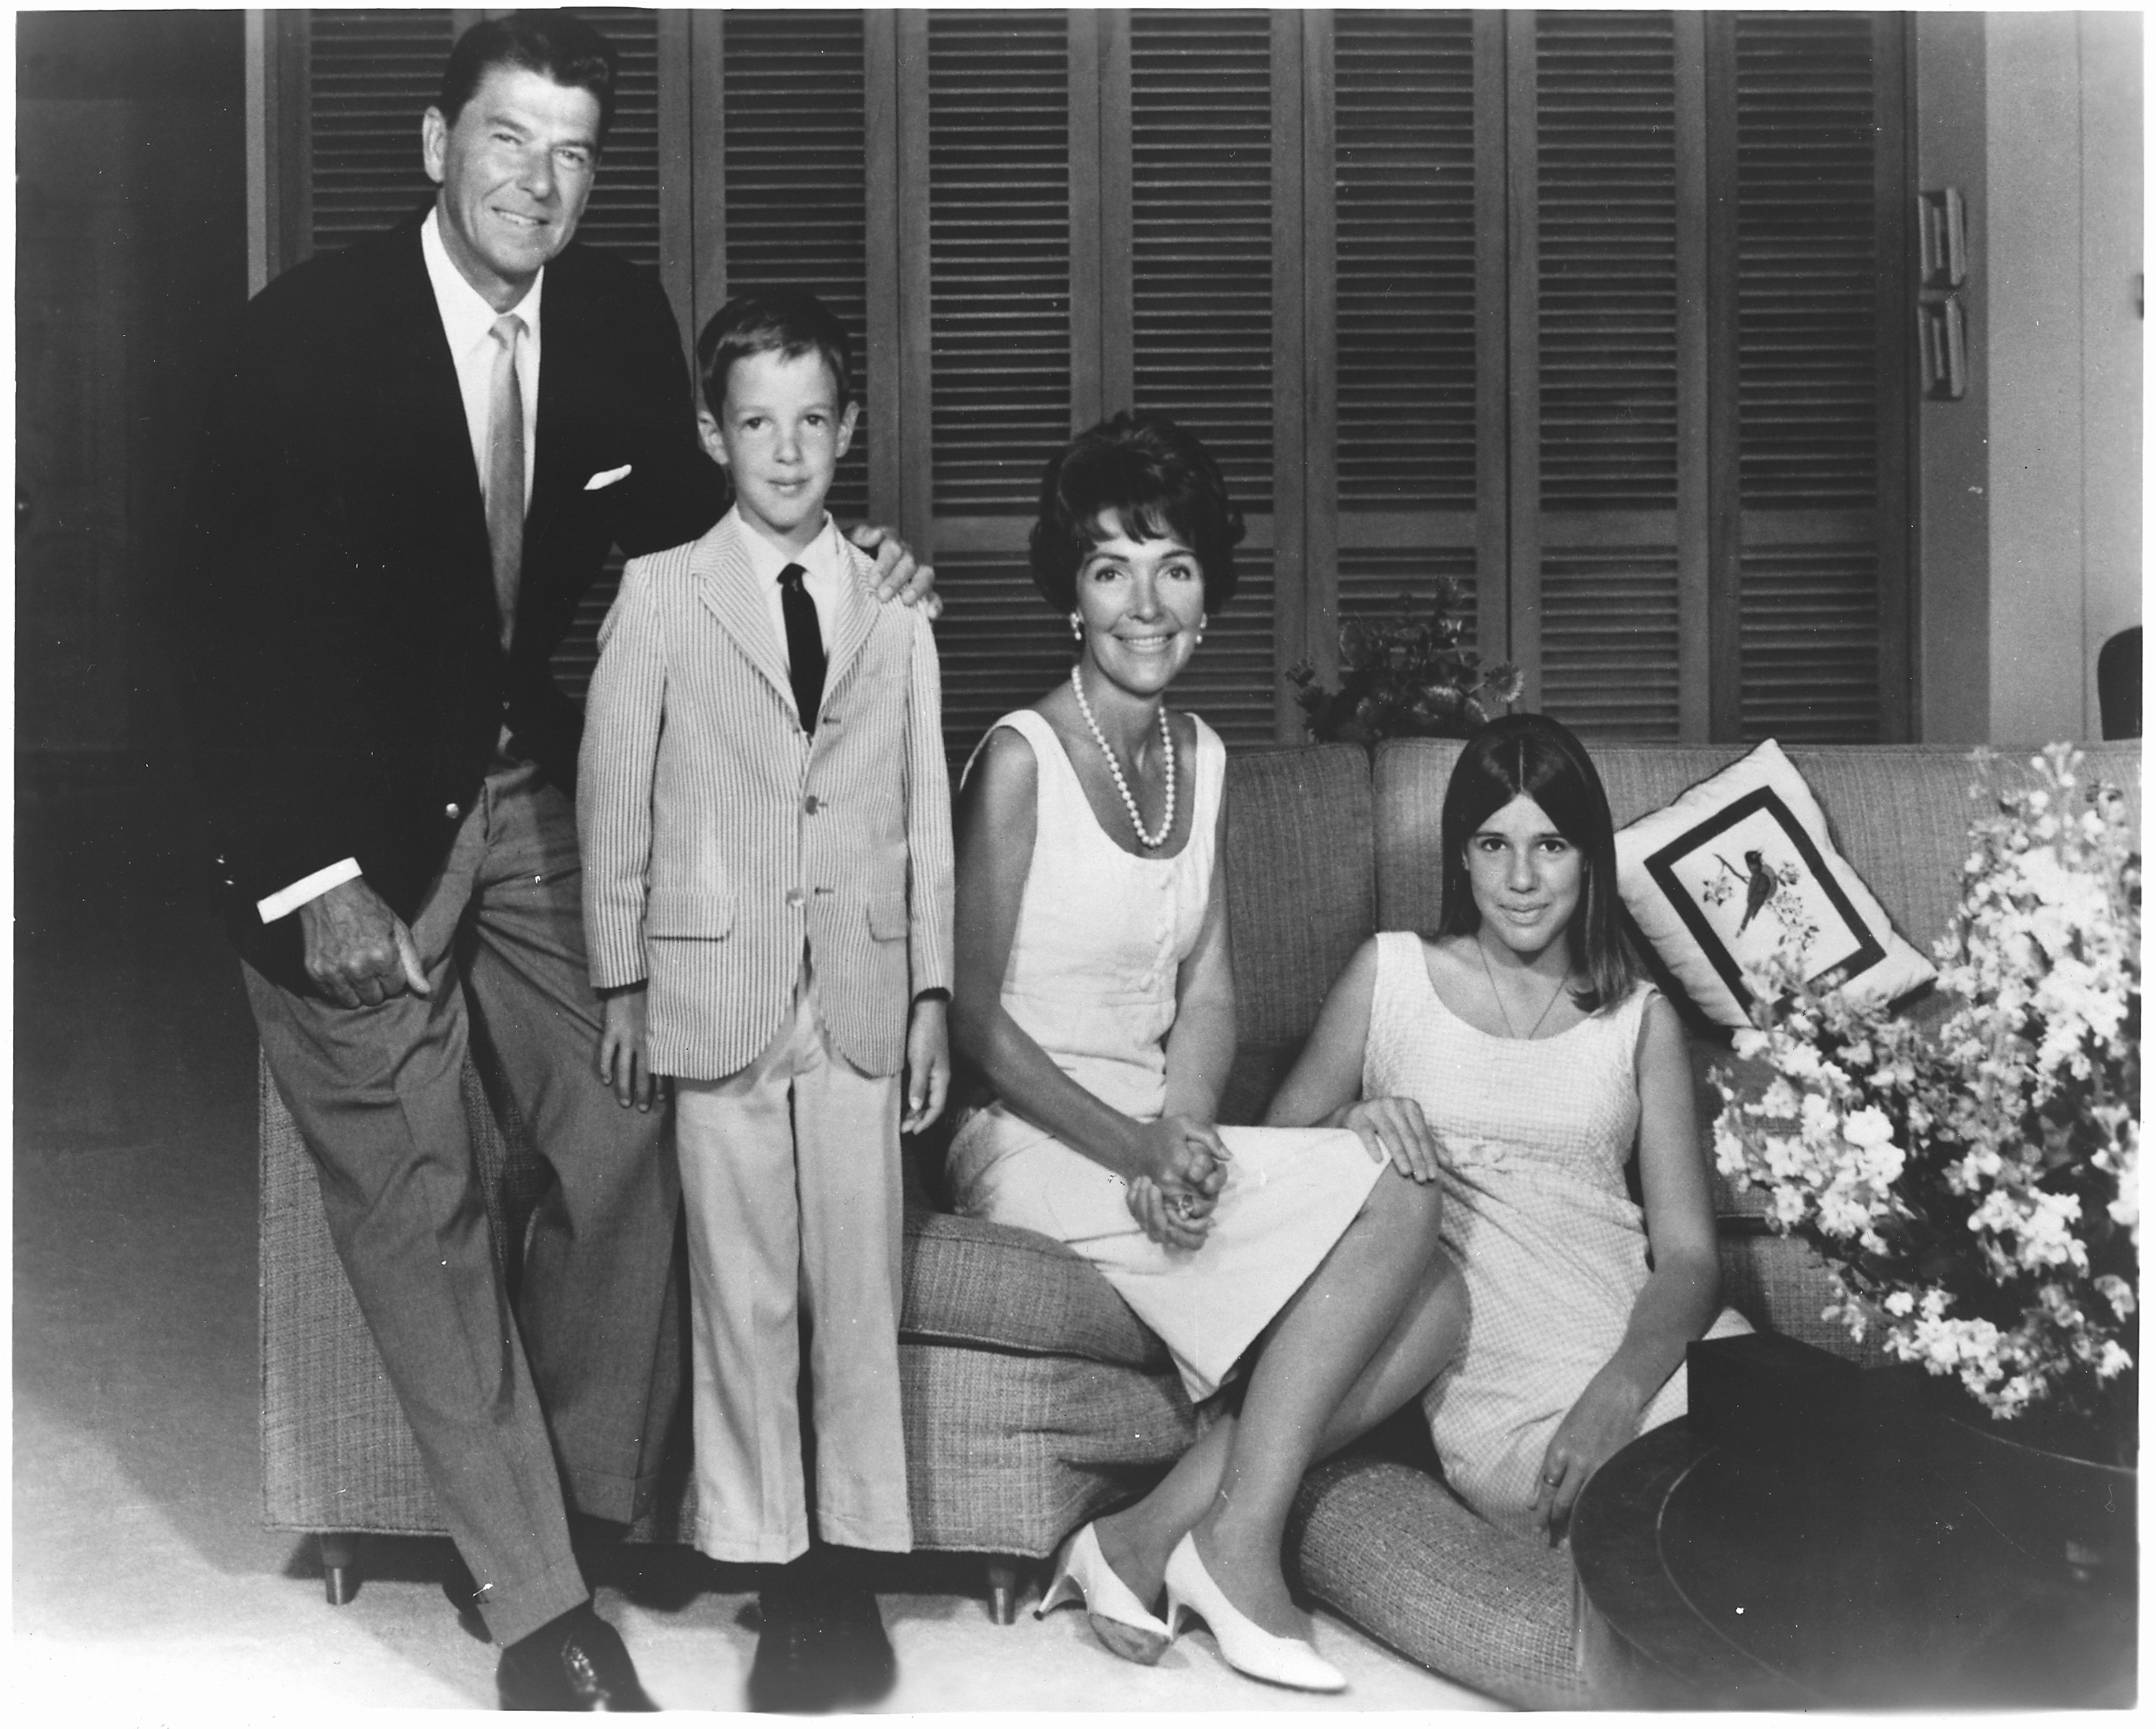 La familia Reagan en 1967, cuando Ronald era Gobernador de California.